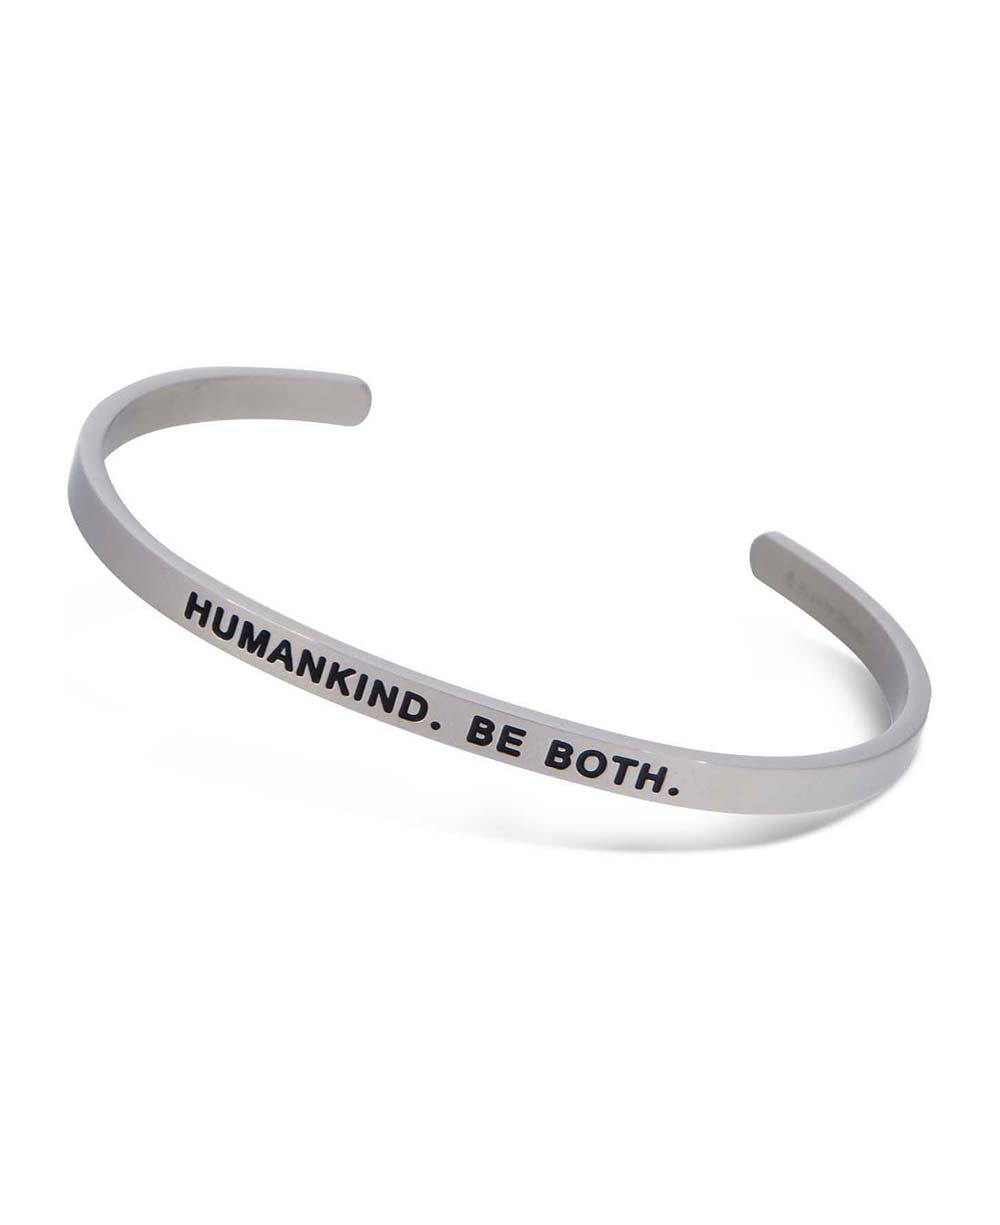 Humankind Inspirational Cuff Bracelet - Bracelets